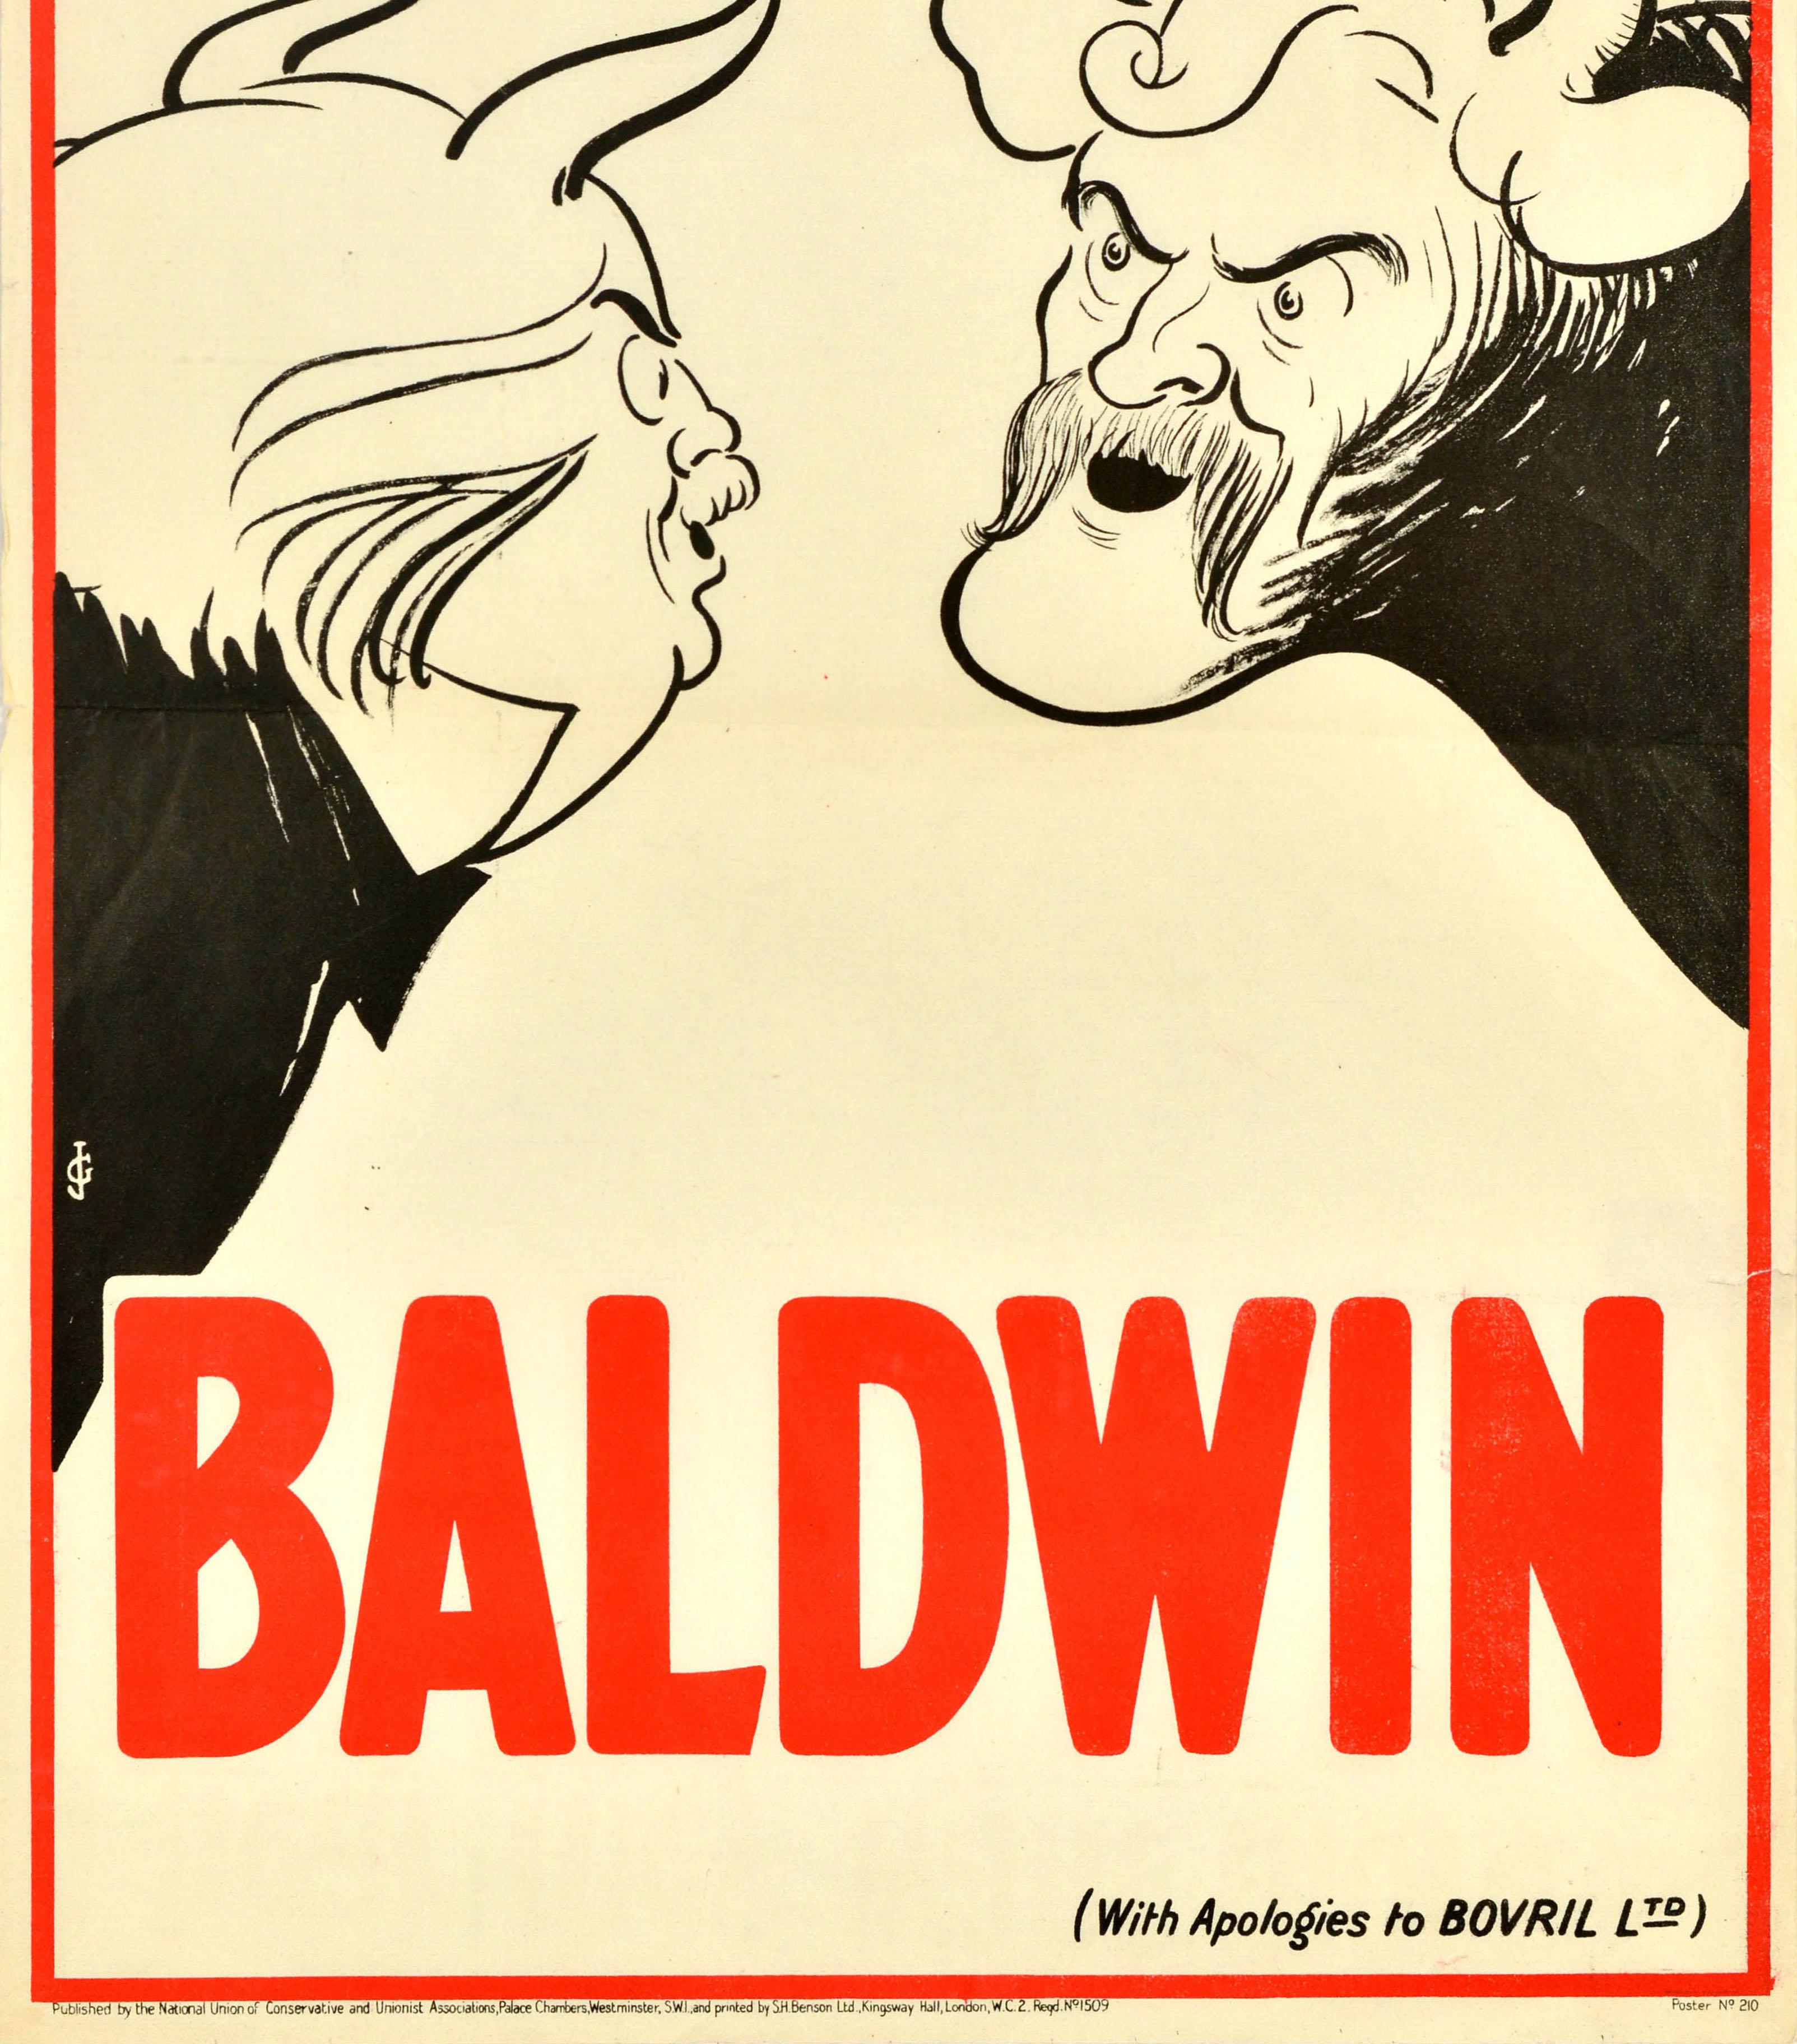 Originales politisches Propagandaplakat - Ich höre, sie wollen mehr - Baldwin (With Apologies to Bovril Ltd.). Design des bekannten Künstlers John Gilroy (John Thomas Young Gilroy; 1898-1985) im Stil der Bovril-Plakate jener Zeit, eingefasst in eine